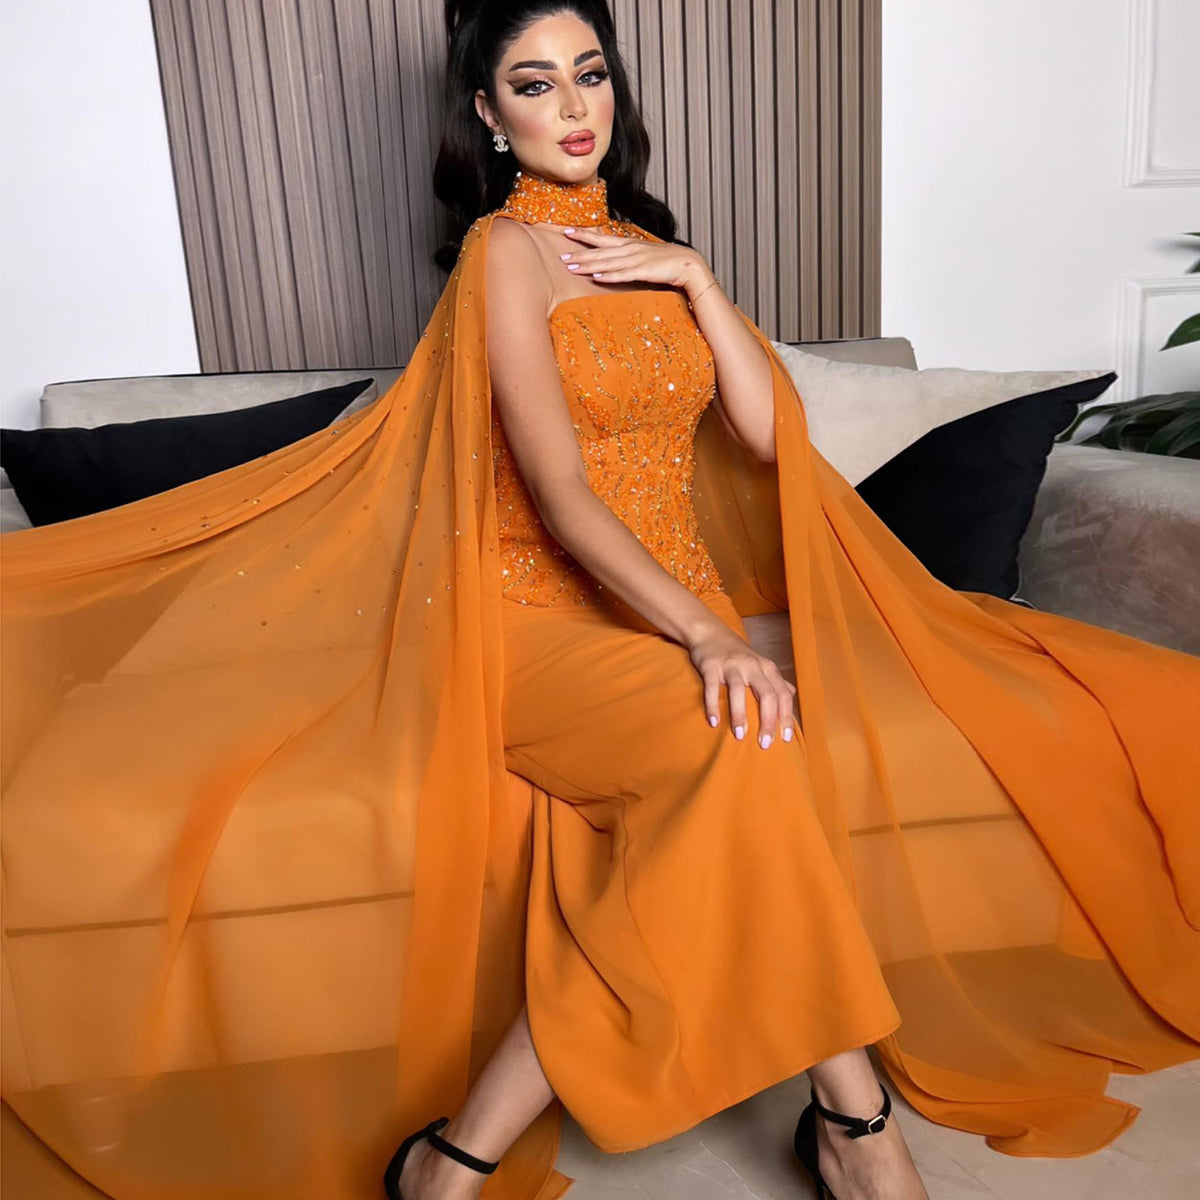 شارون سعيد فستان سهرة عربي برتقالي بدون حمالات مع أكمام كيب للنساء لحفلات الزفاف الفاخرة في دبي رداء الحفلات الرسمية SS299